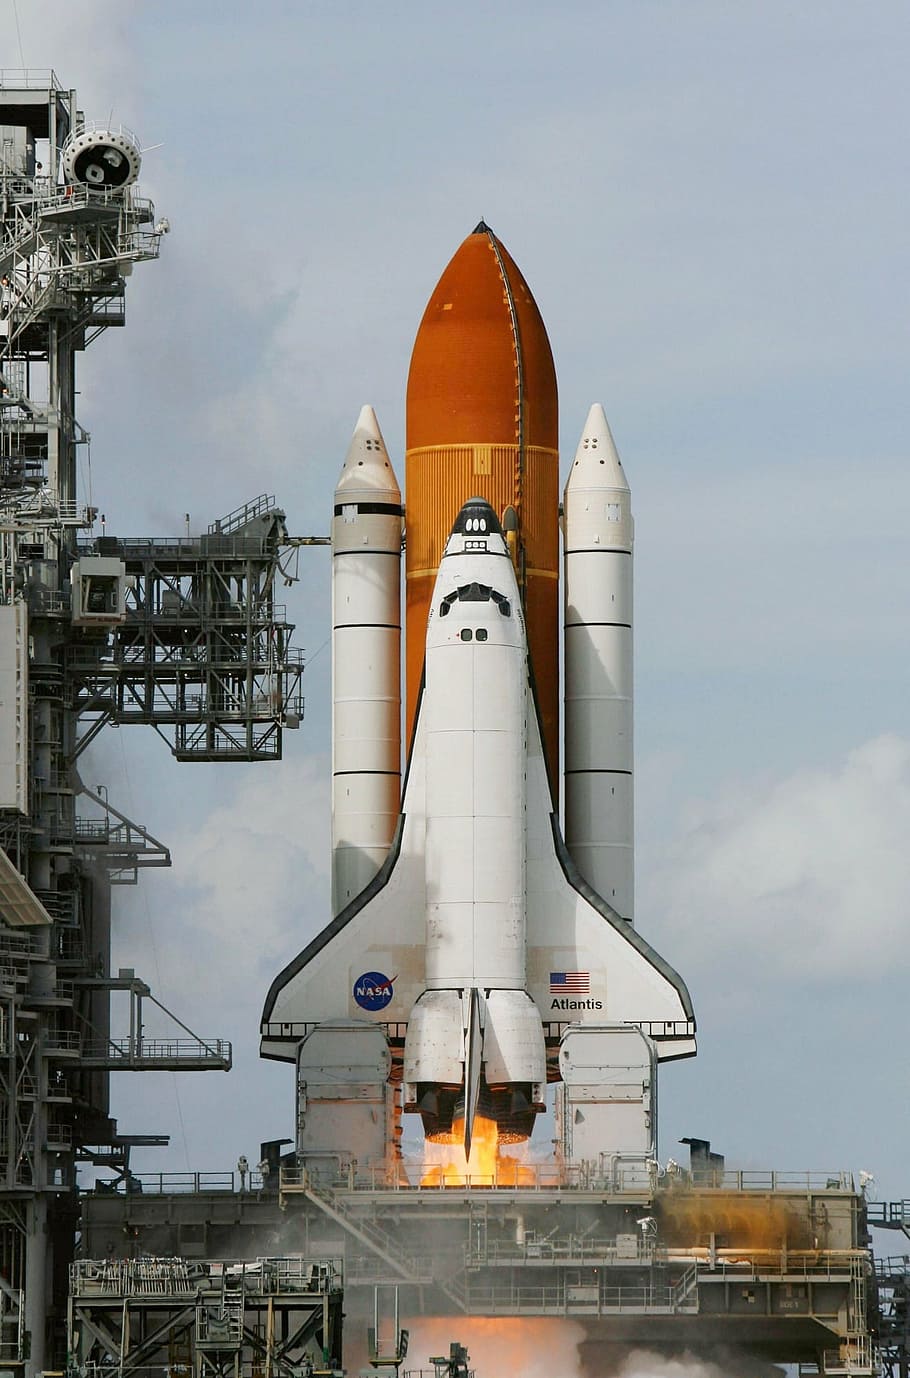 transbordador espacial nasa, toma, tierra, transbordador espacial atlantis, despegue, lanzamiento, llamas, plataforma de lanzamiento, cohetes, exploración